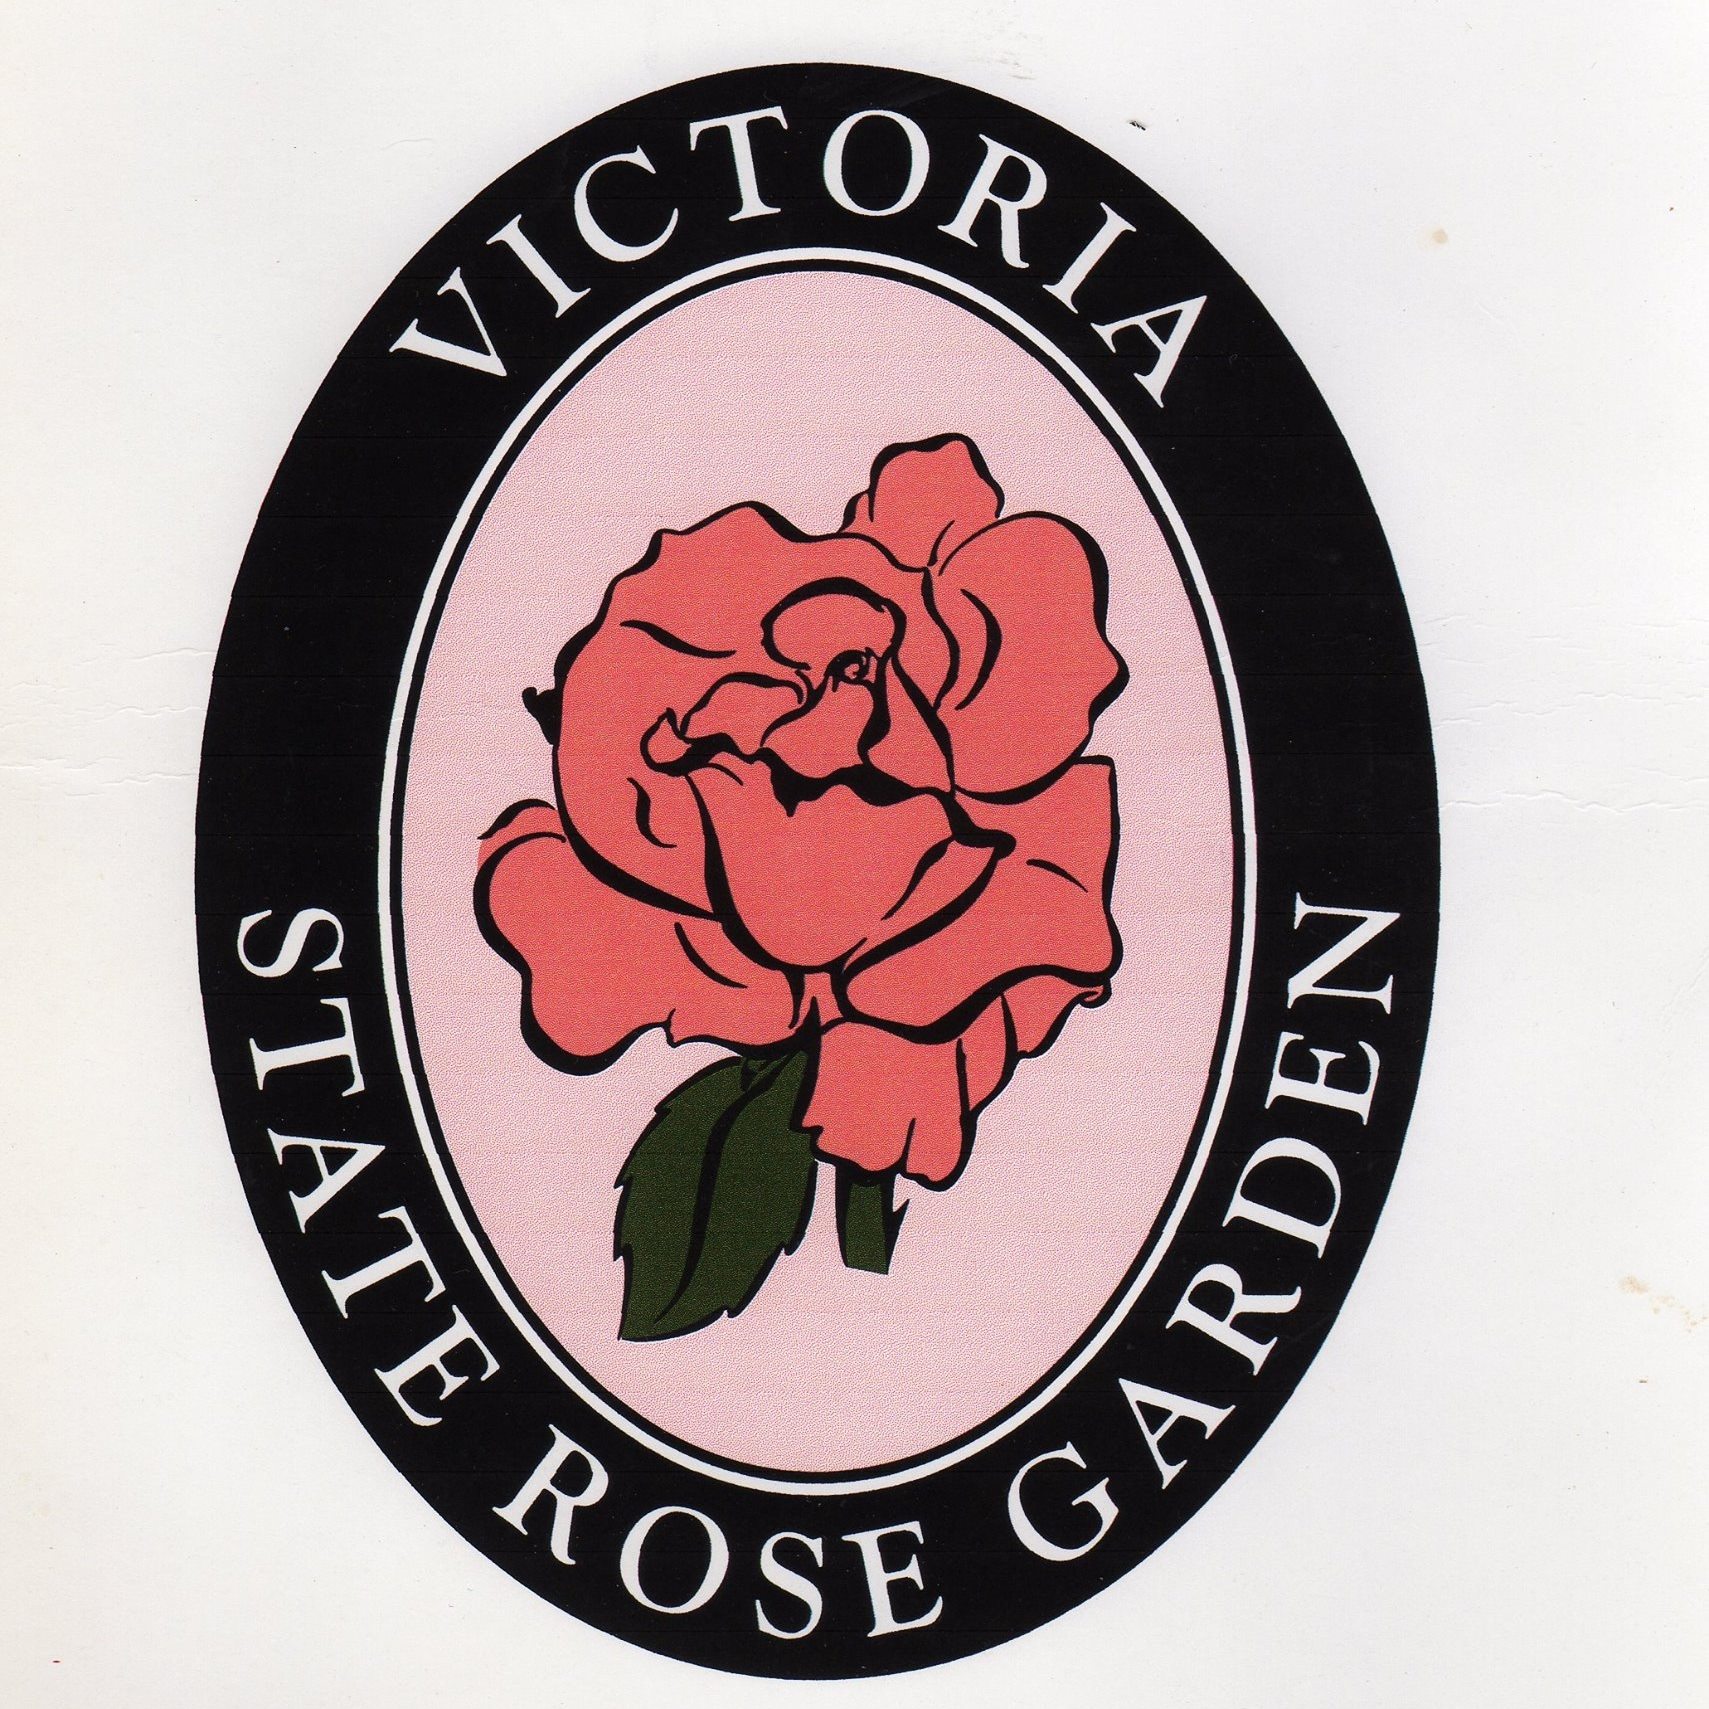 Victoria State Rose Garden